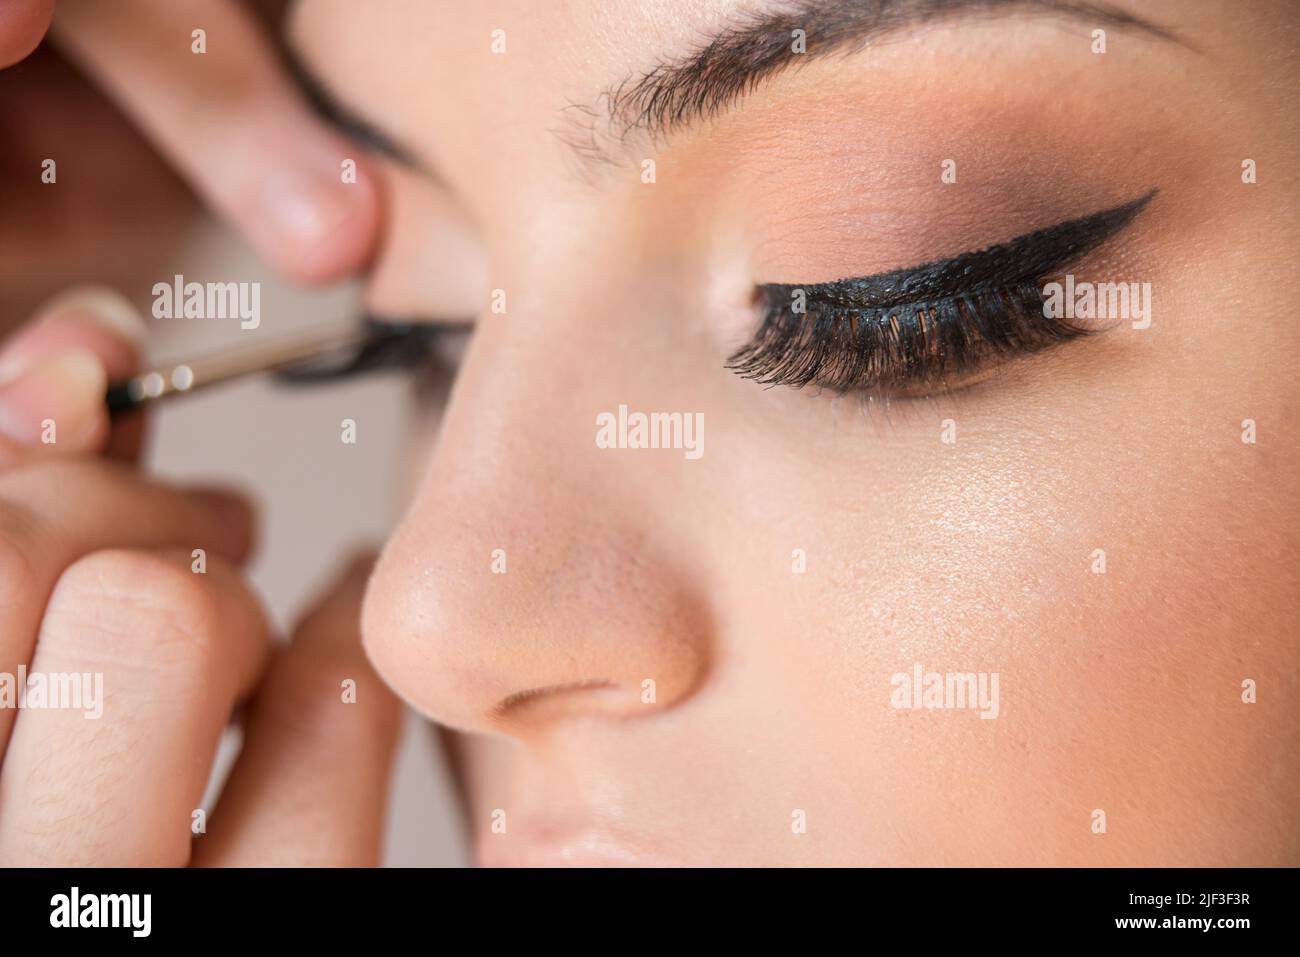 Makrodetails von falschen Wimpern des kaukasischen Modells während der Make-up-Sitzung. Der Make-up-Künstler wendet mit dem Pinsel einen schwarzen Eyeliner an. Das Modell verfügt über Stockfoto